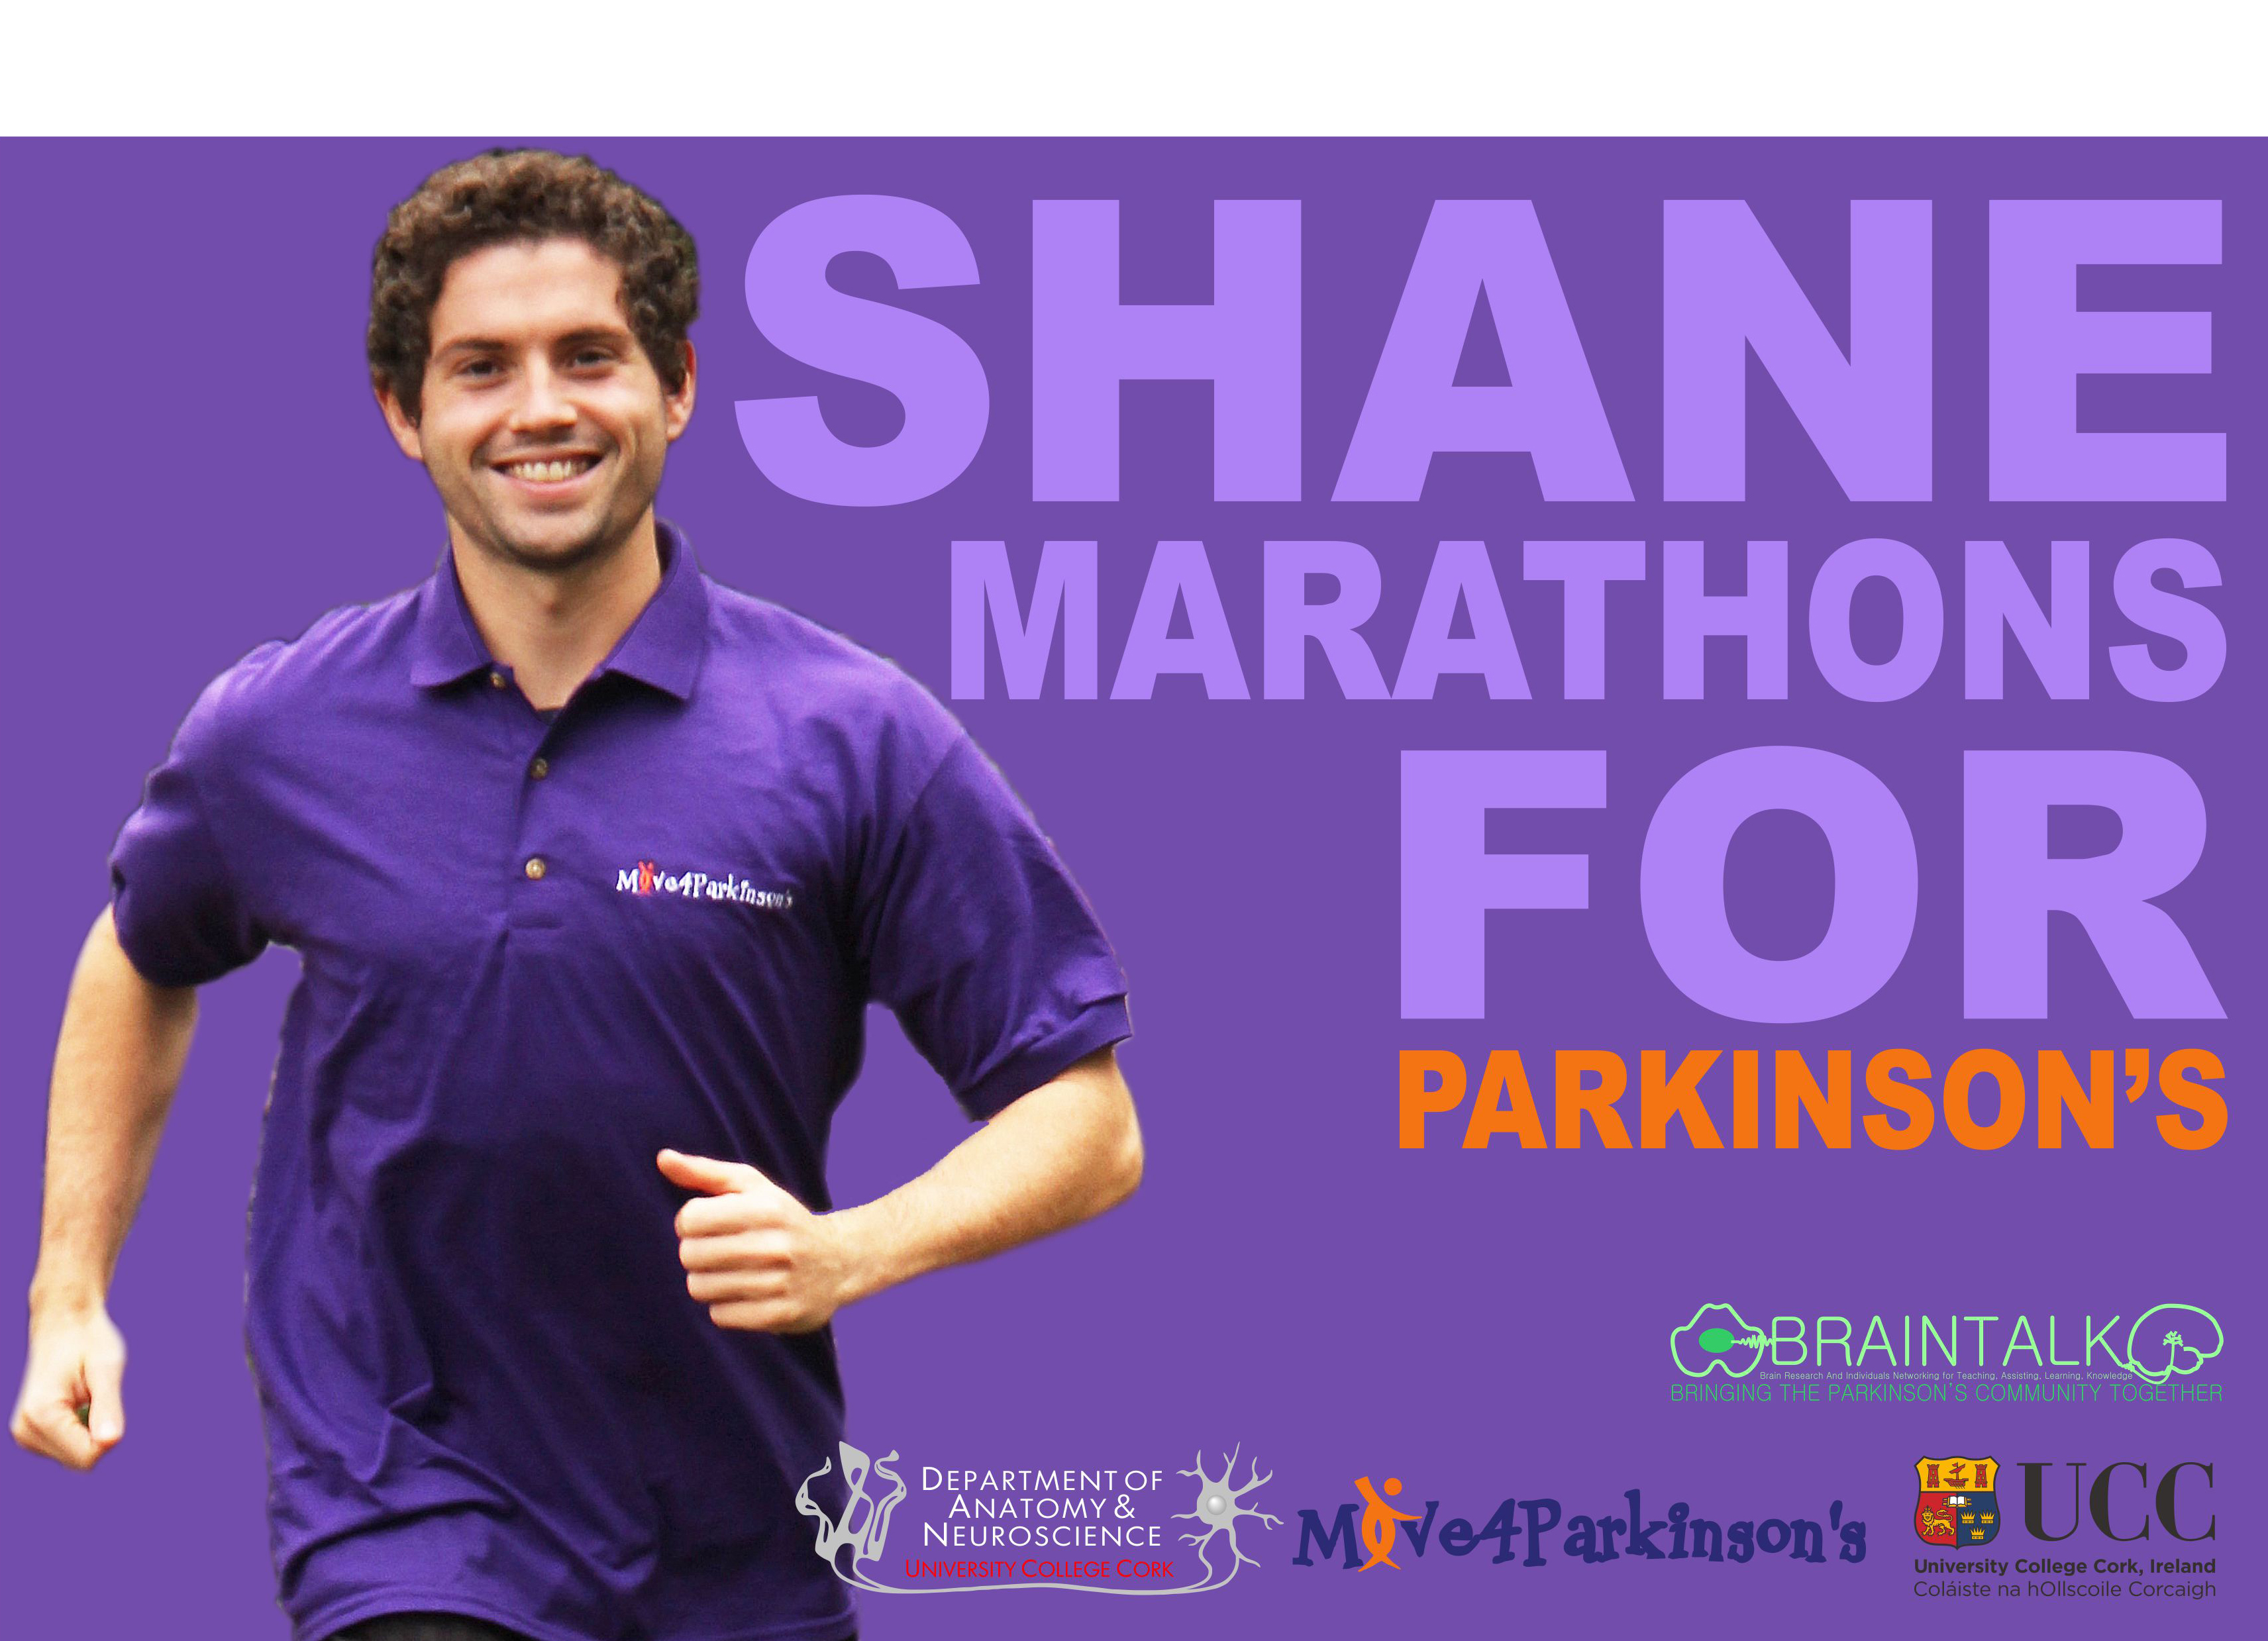 Shane Hegarty 'Marathons for Parkinson's'